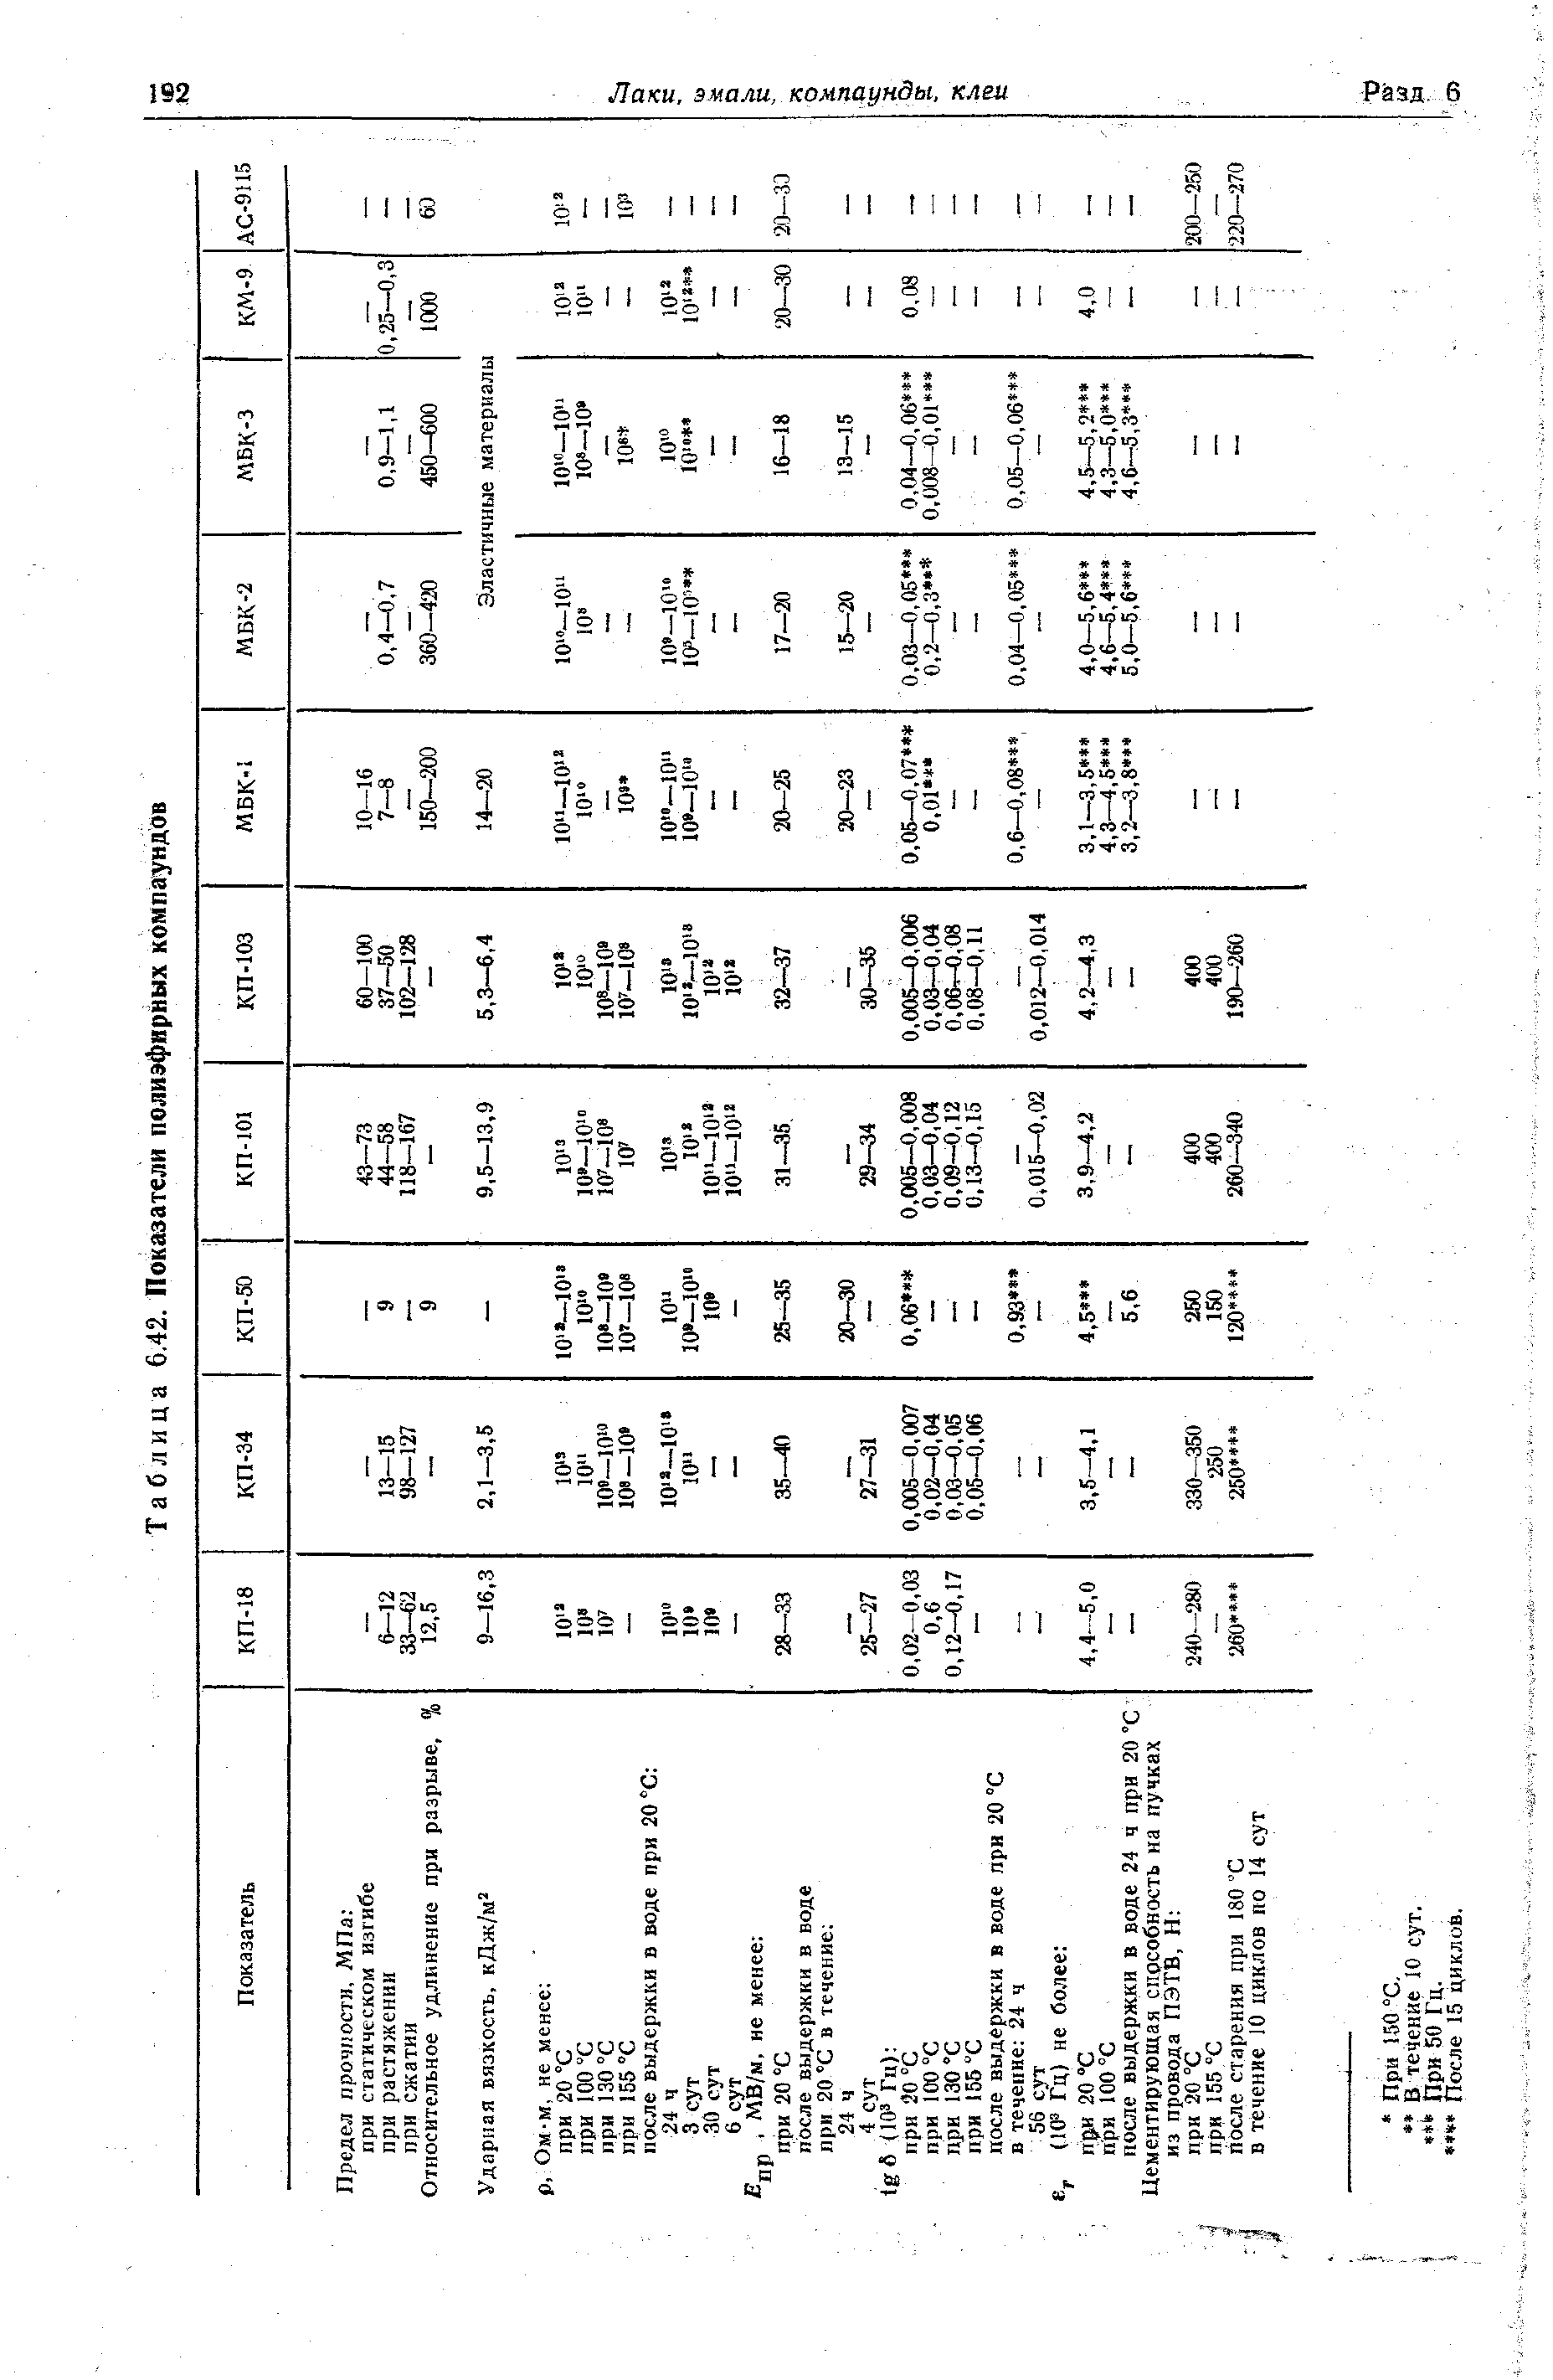 Таблица 6,42. Показатели полиэфирных компаундов
